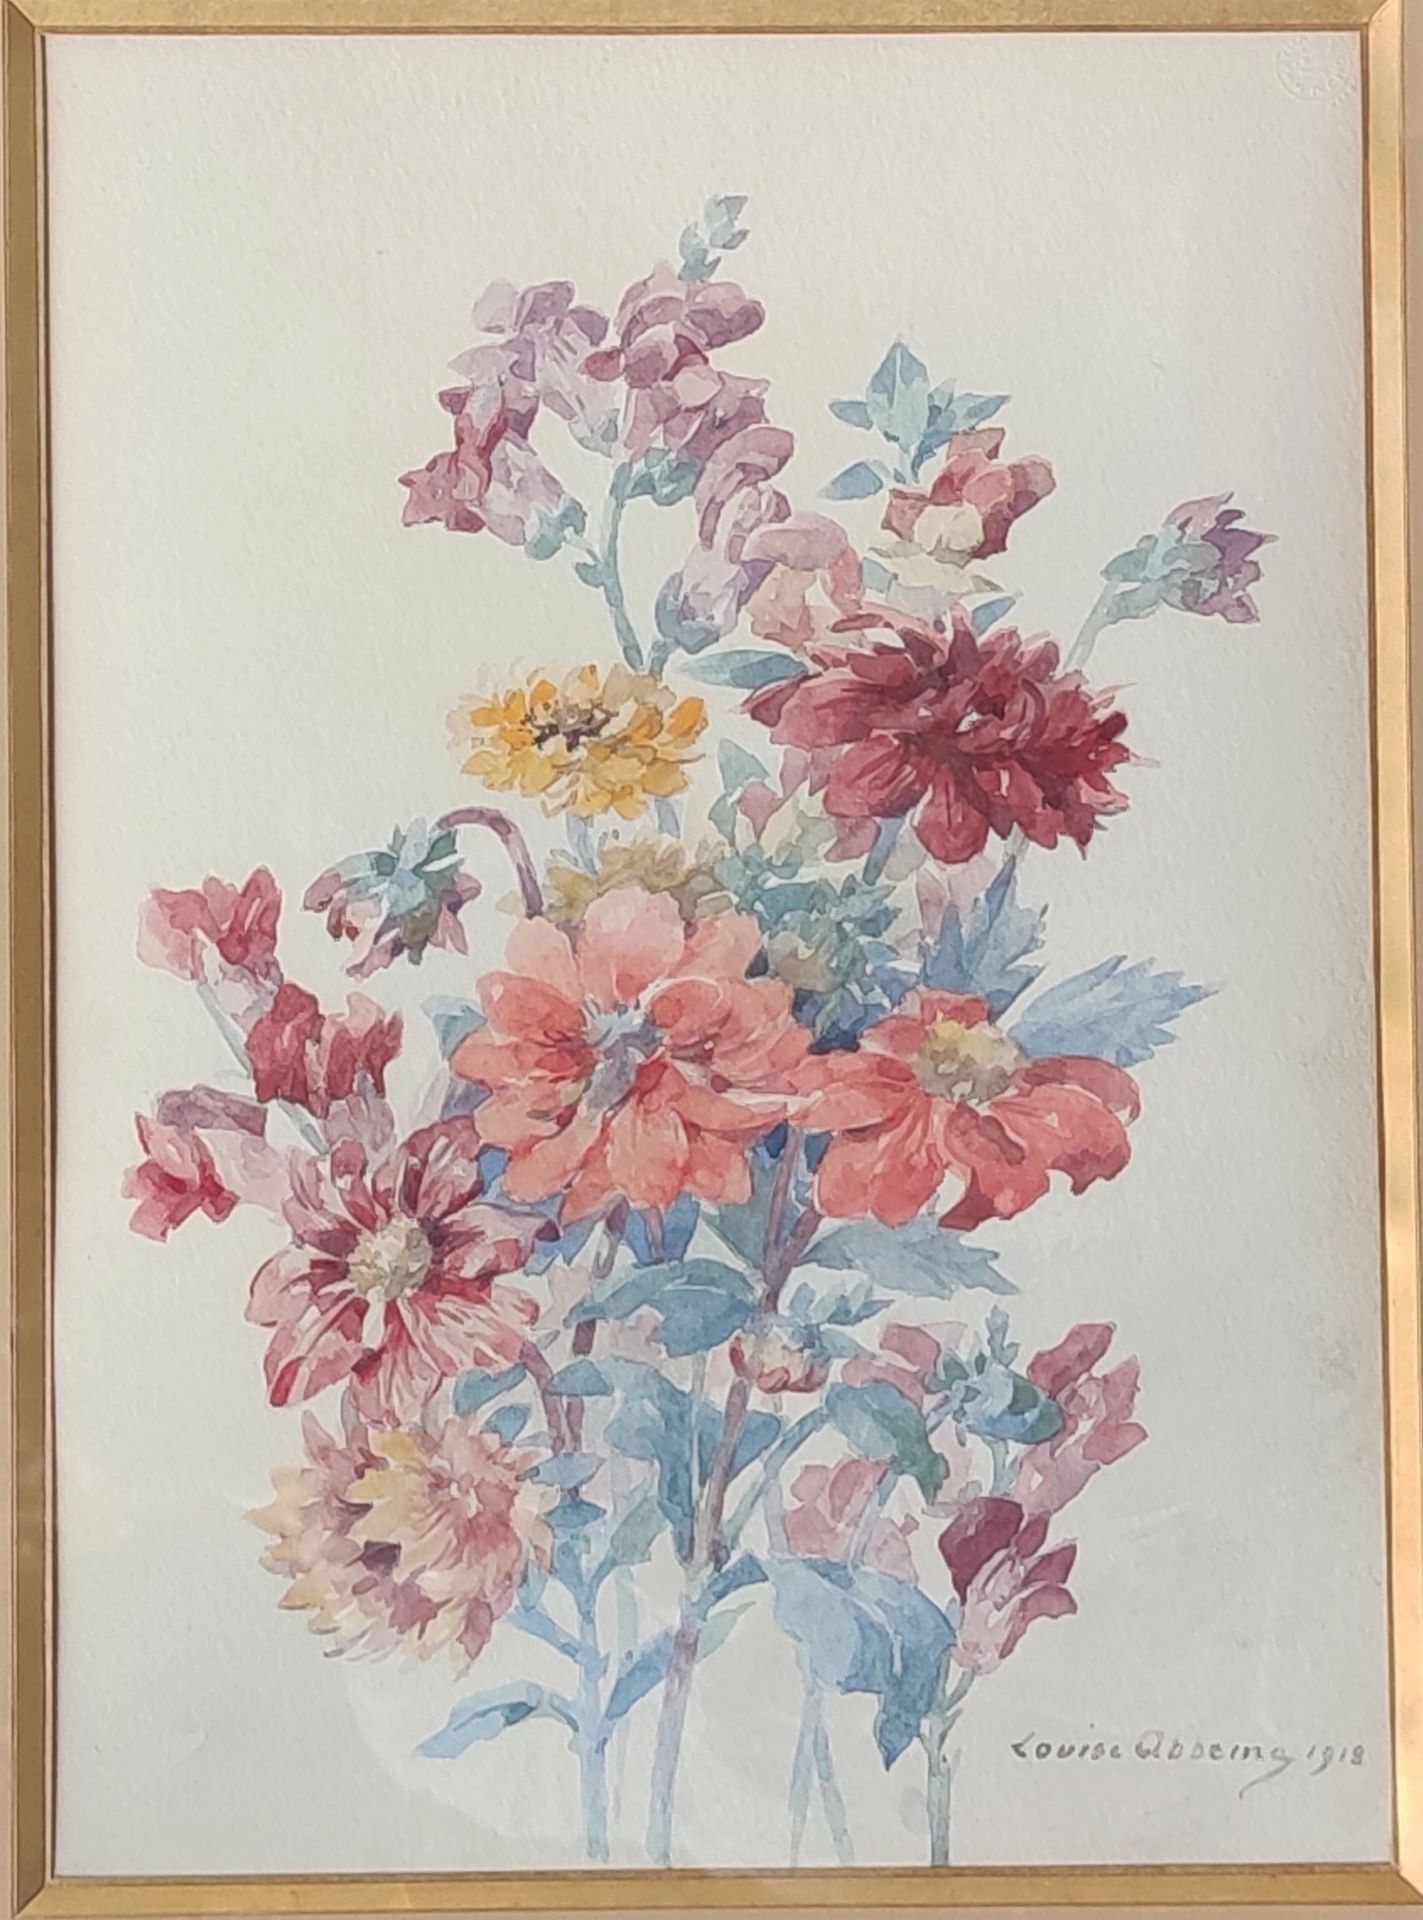 Null 路易丝-阿贝玛 (1858-1927)

扔花，1918年

水彩画，右下角有签名和日期

37 X 27厘米